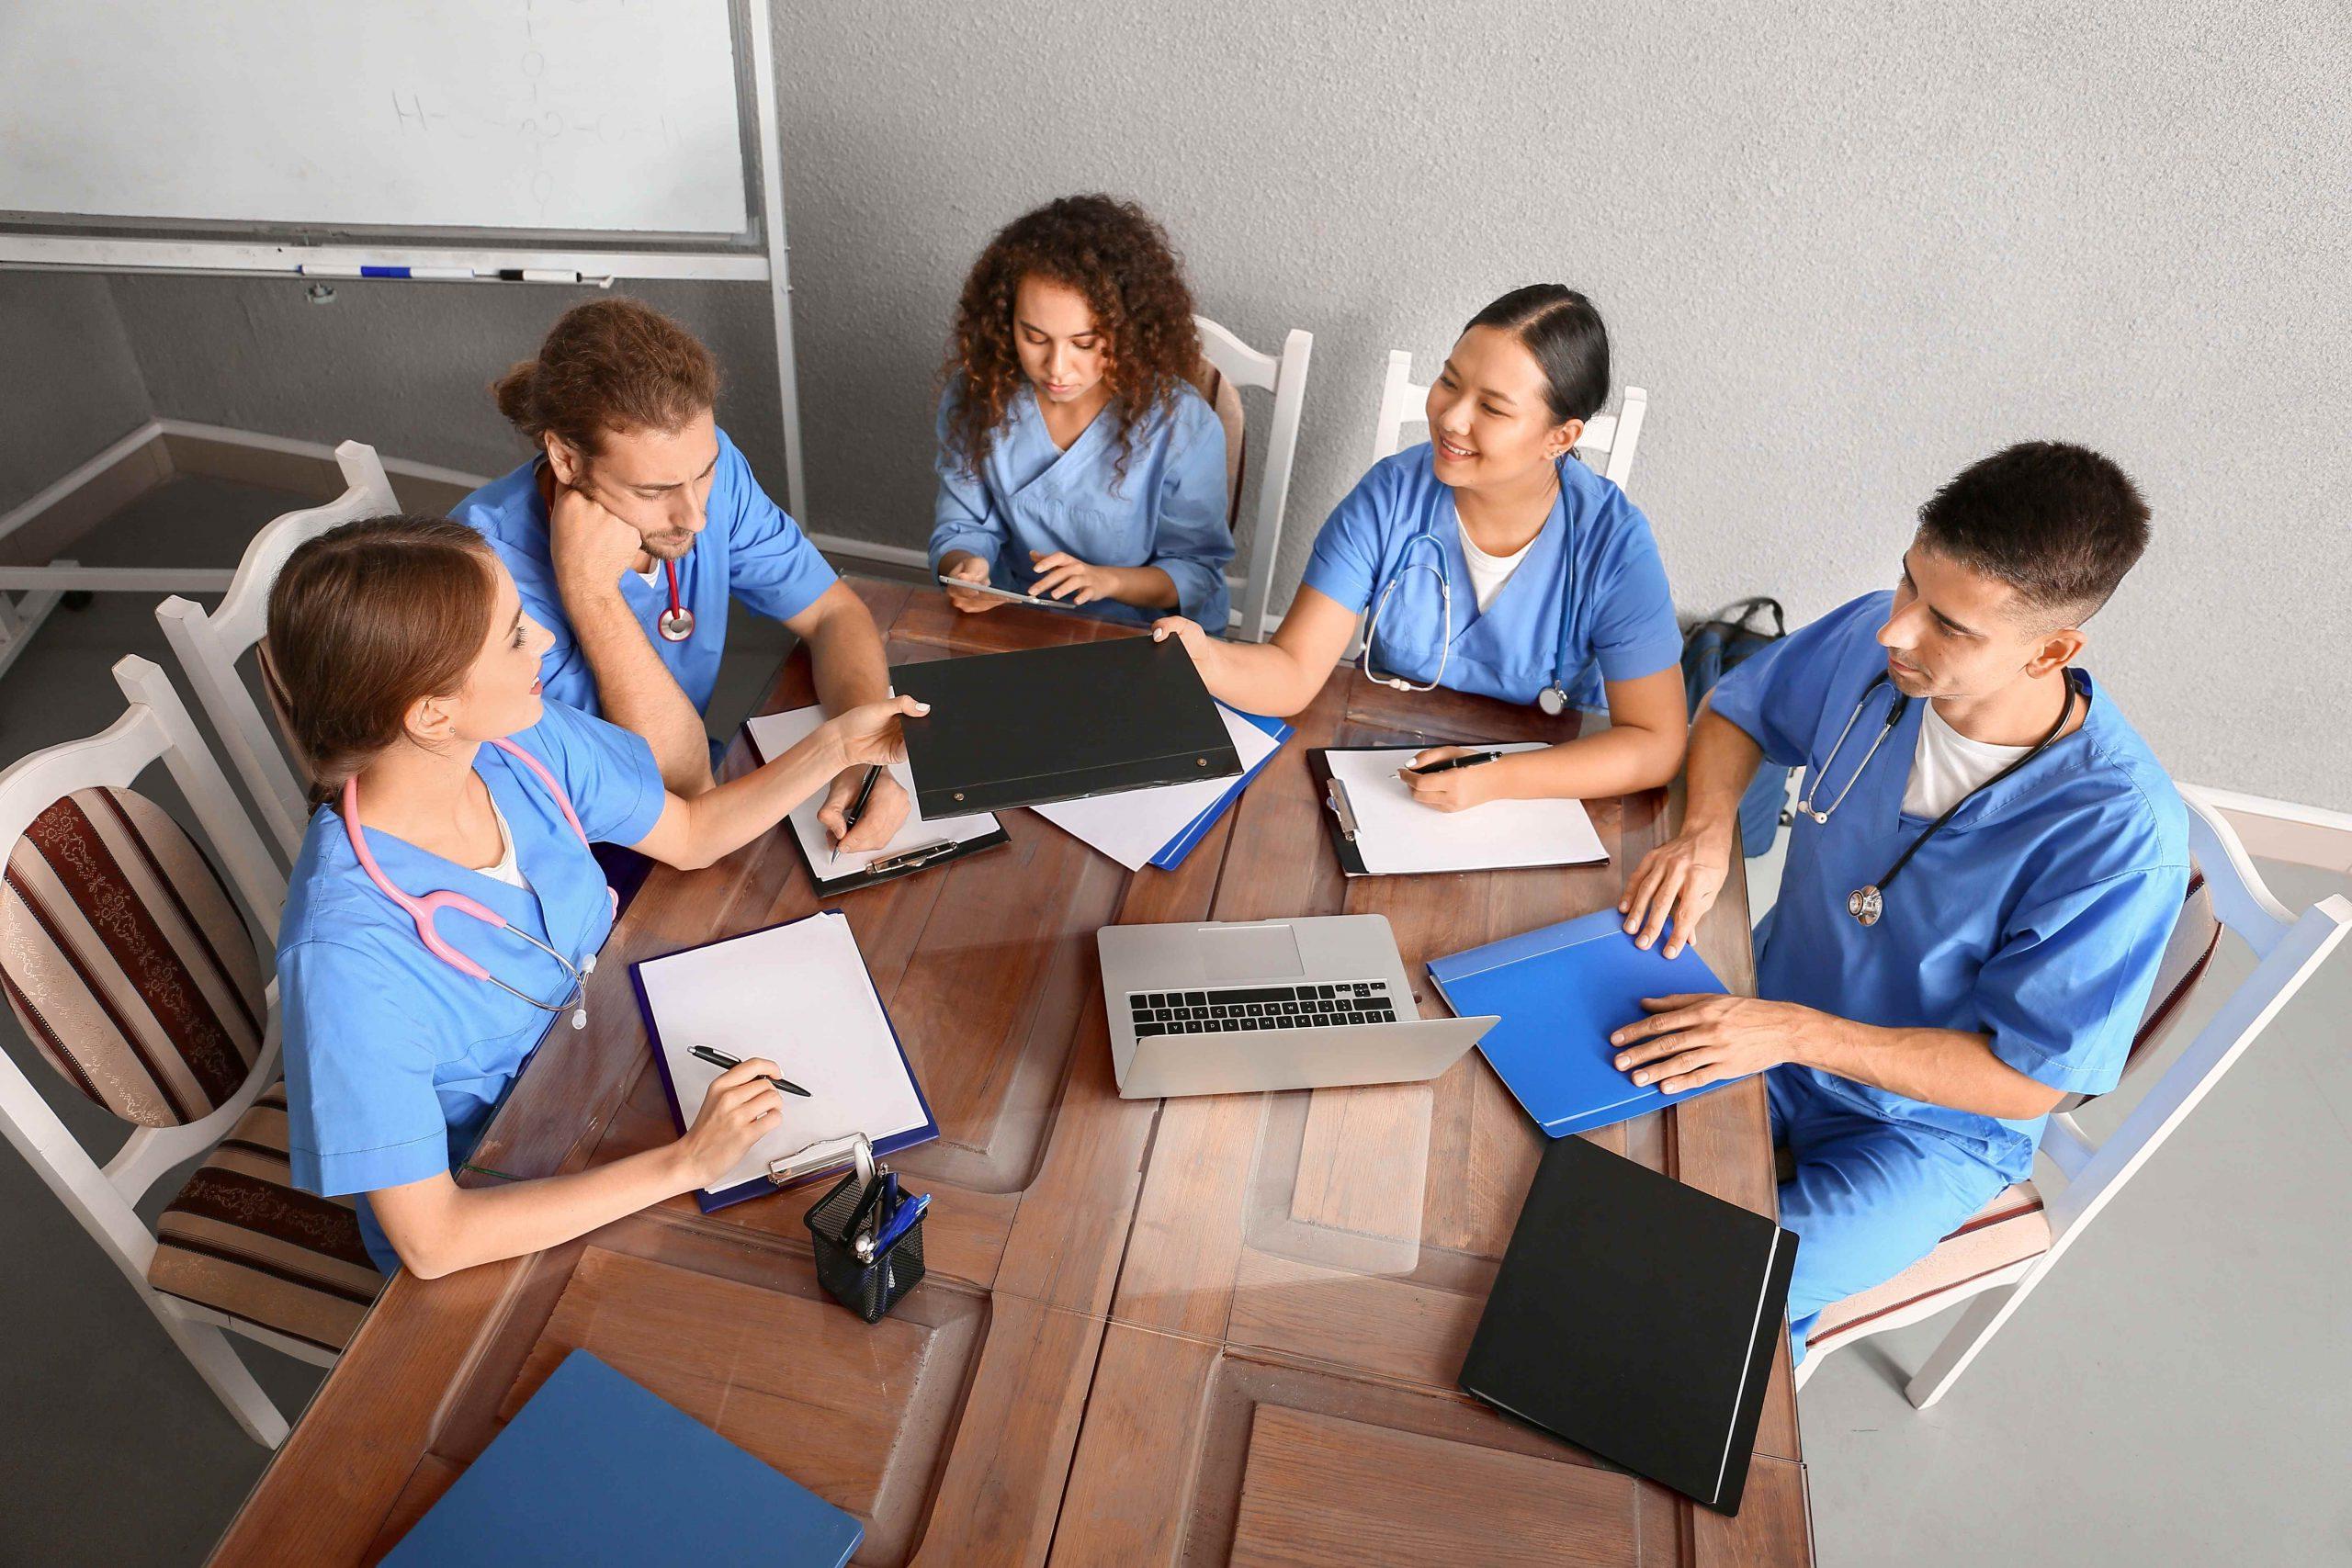 国际 Program at Beckfield College. F1签证计划. A group of nursing students are gathered at a table studying